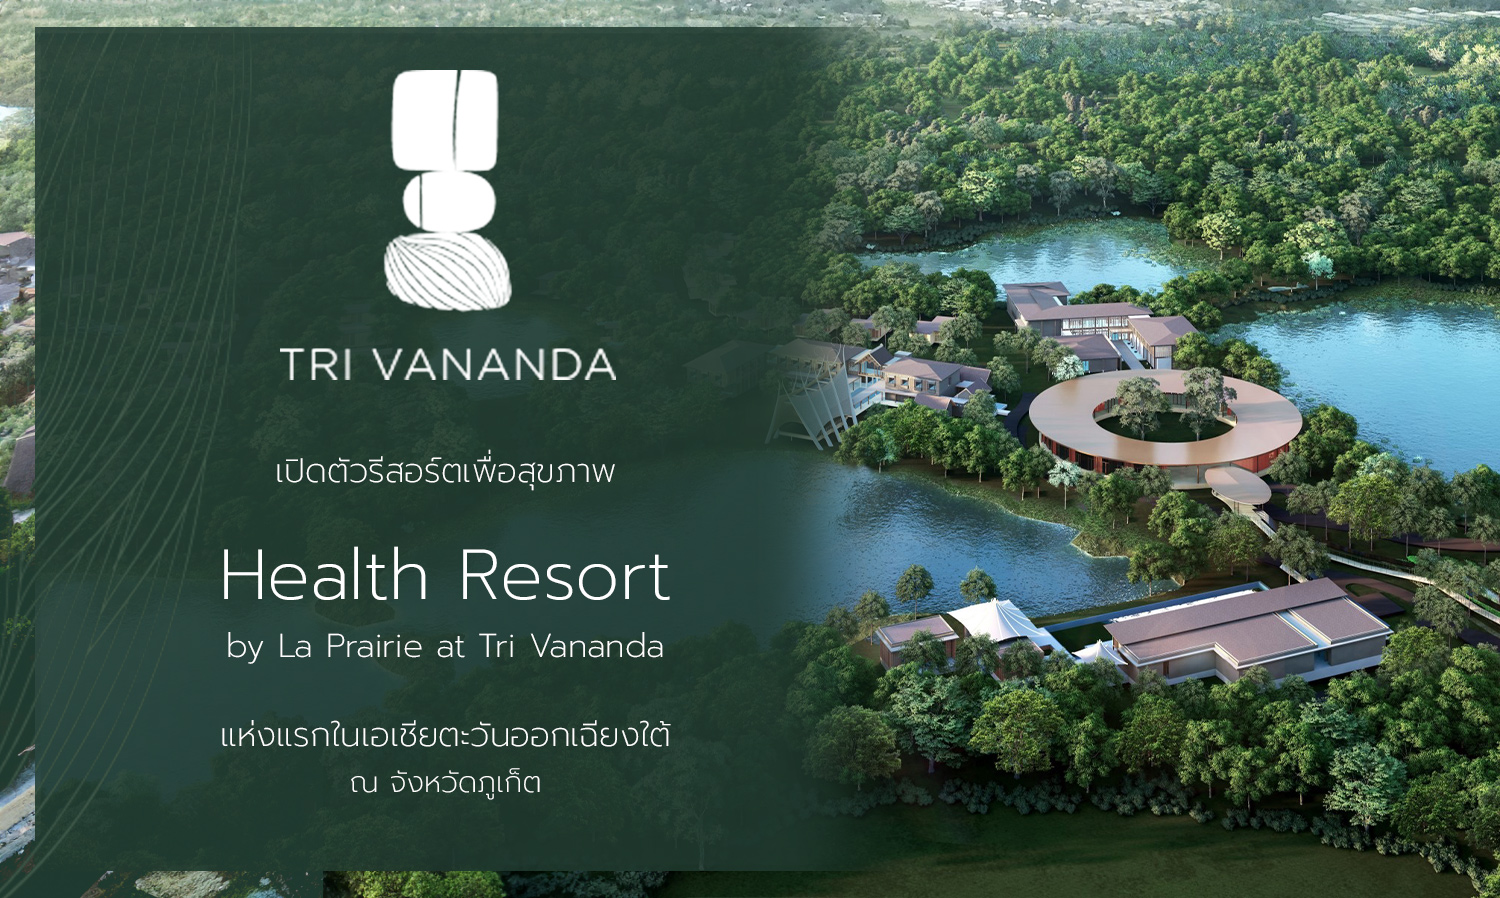 ตรีวนันดา เปิดตัวรีสอร์ตเพื่อสุขภาพ เฮลธ์ รีสอร์ต บาย คลินิก ลา แพรรี Health Resort by La Prairie at Tri Vananda แห่งแรกในเอเชียตะวันออกเฉียงใต้ ณ จังหวัดภูเก็ต